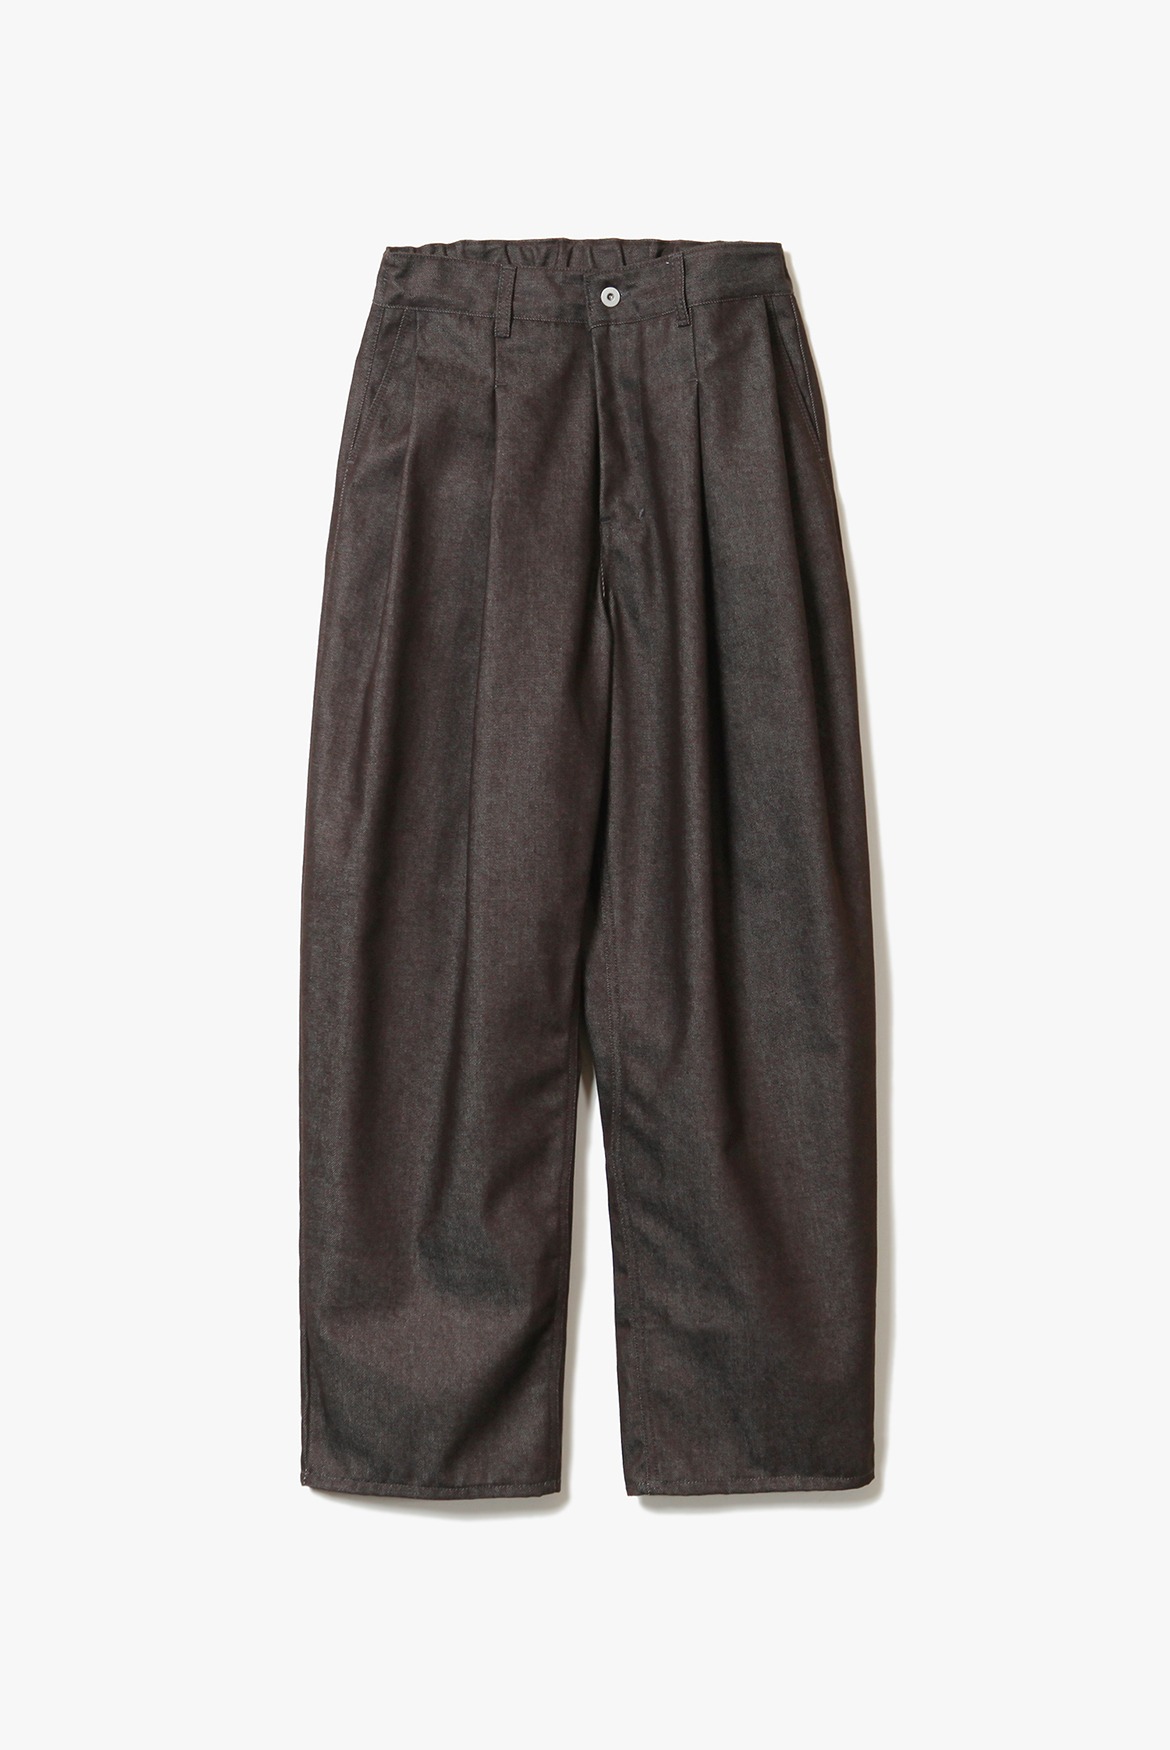 Two Tuck Clean Denim Half Banding Pants [Brown]